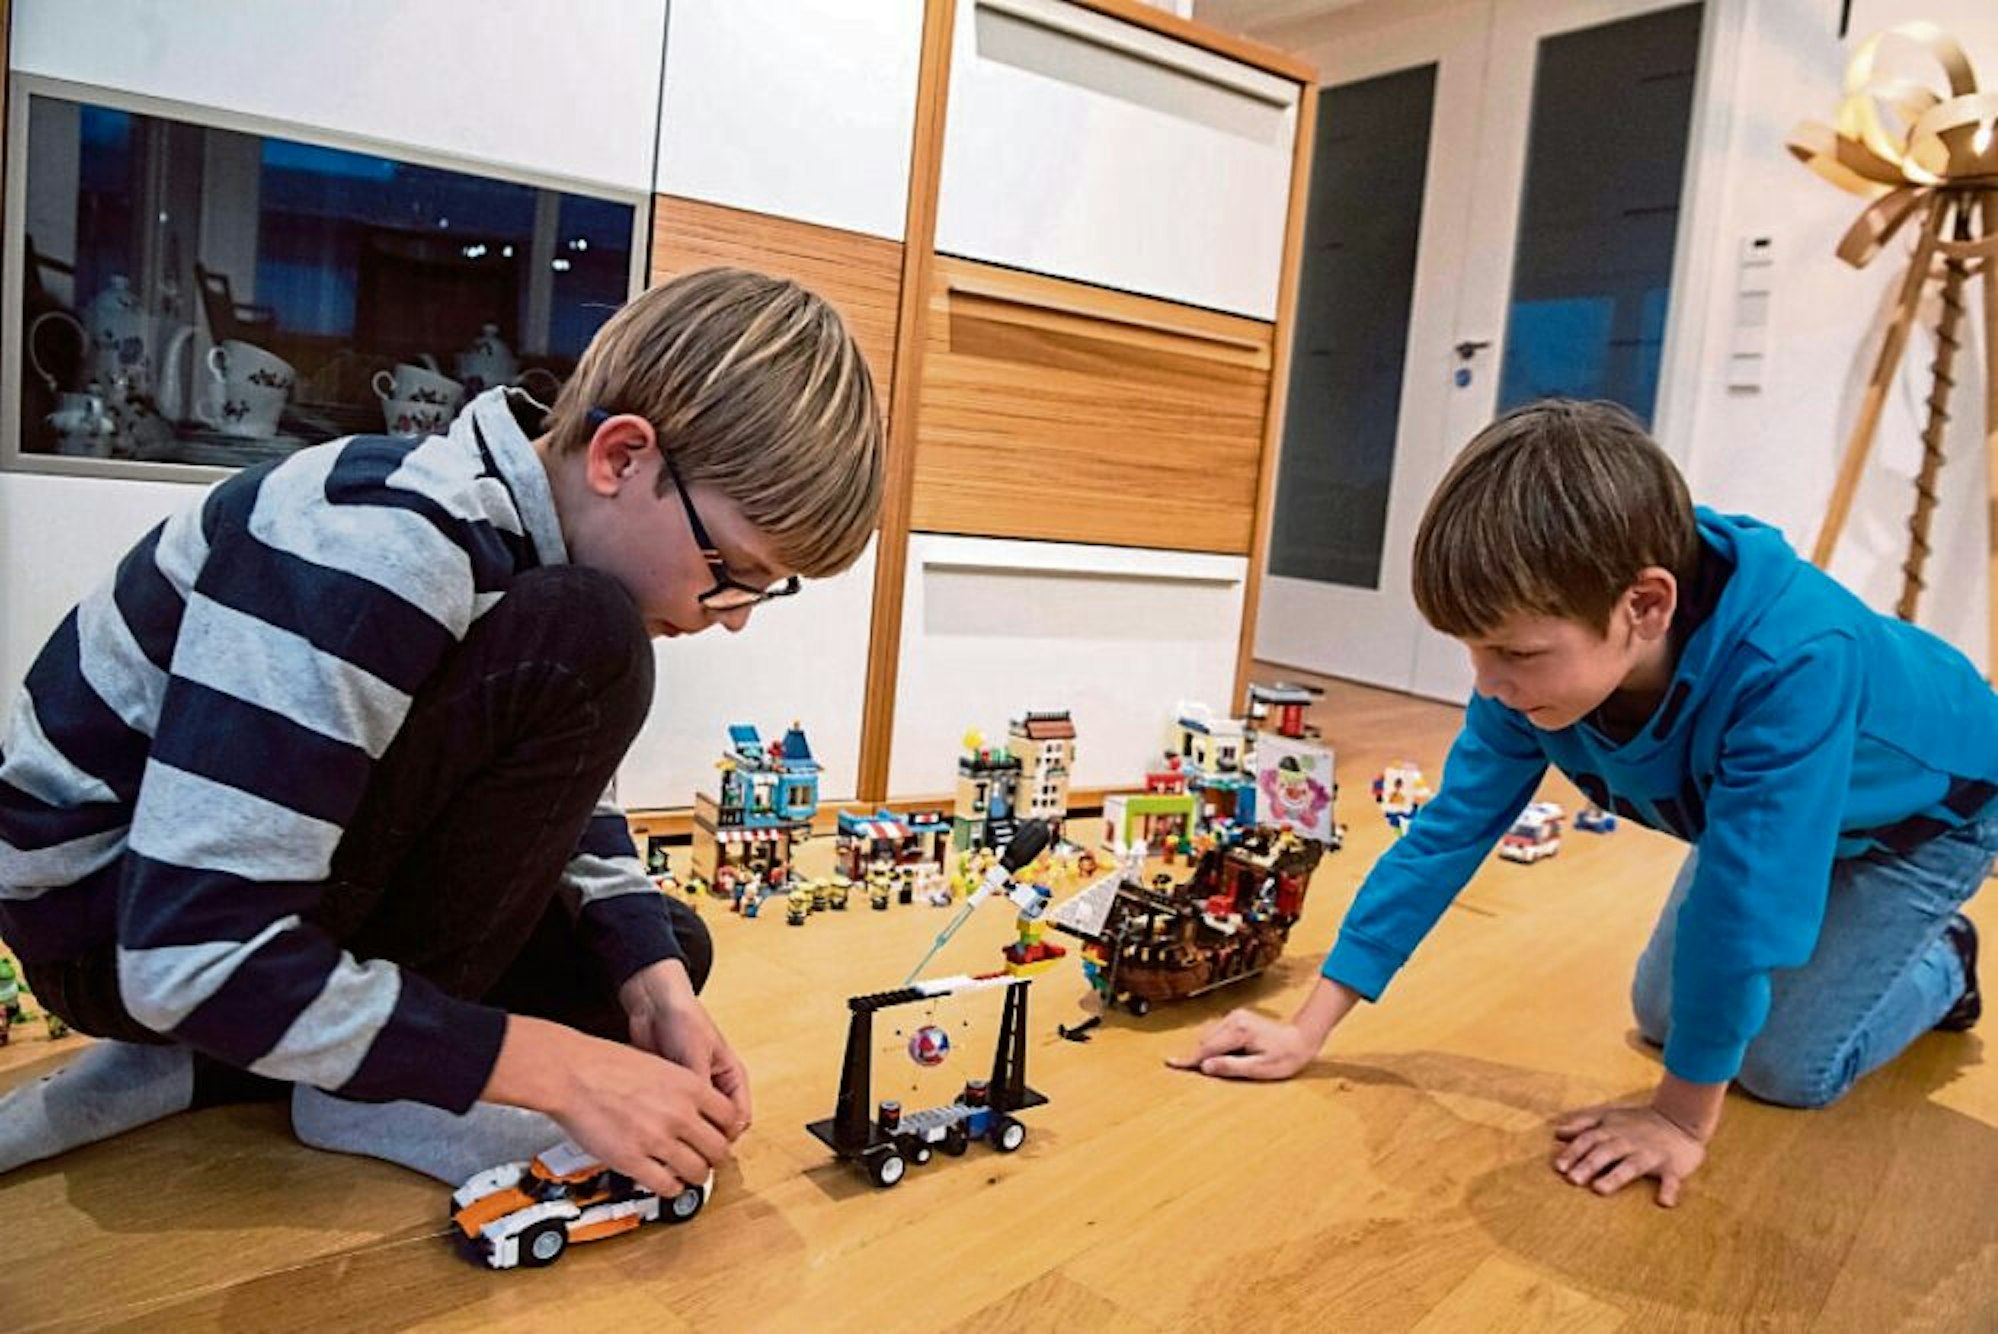 Bauherren: Die Brüder Fabian (l.) und Julian haben aus Lego-Steinen einen Miniatur-Karnevalszug gebaut.